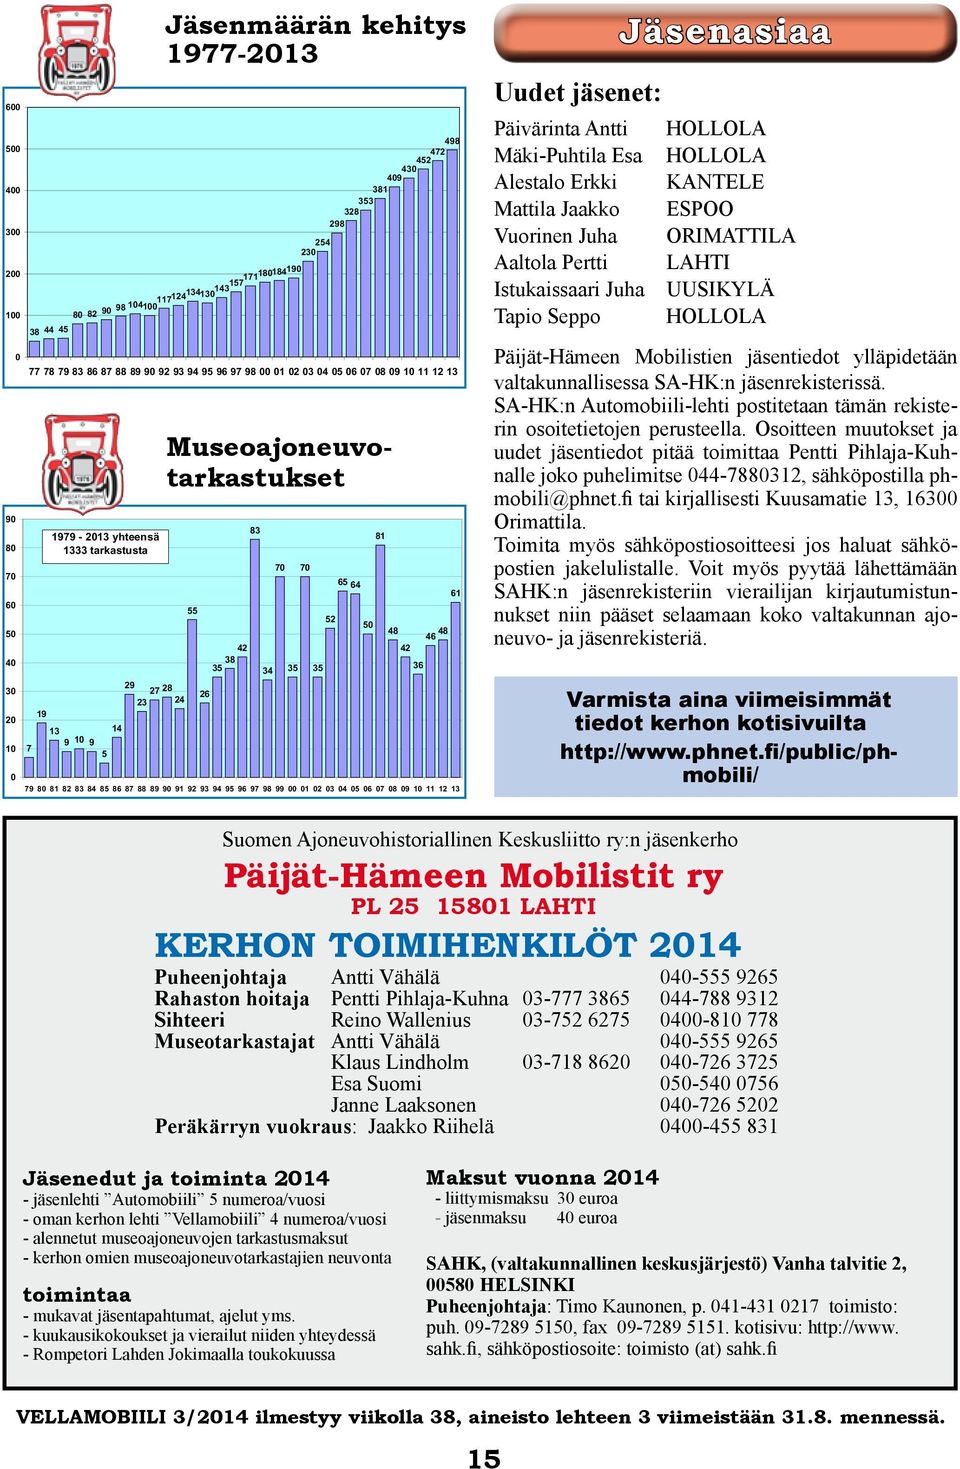 Museoajoneuvotarkastukset 23 27 28 24 Jäsenmäärän kehitys 1977-2013 Varmista aina viimeisimmät tiedot kerhon kotisivuilta http://www.phnet.